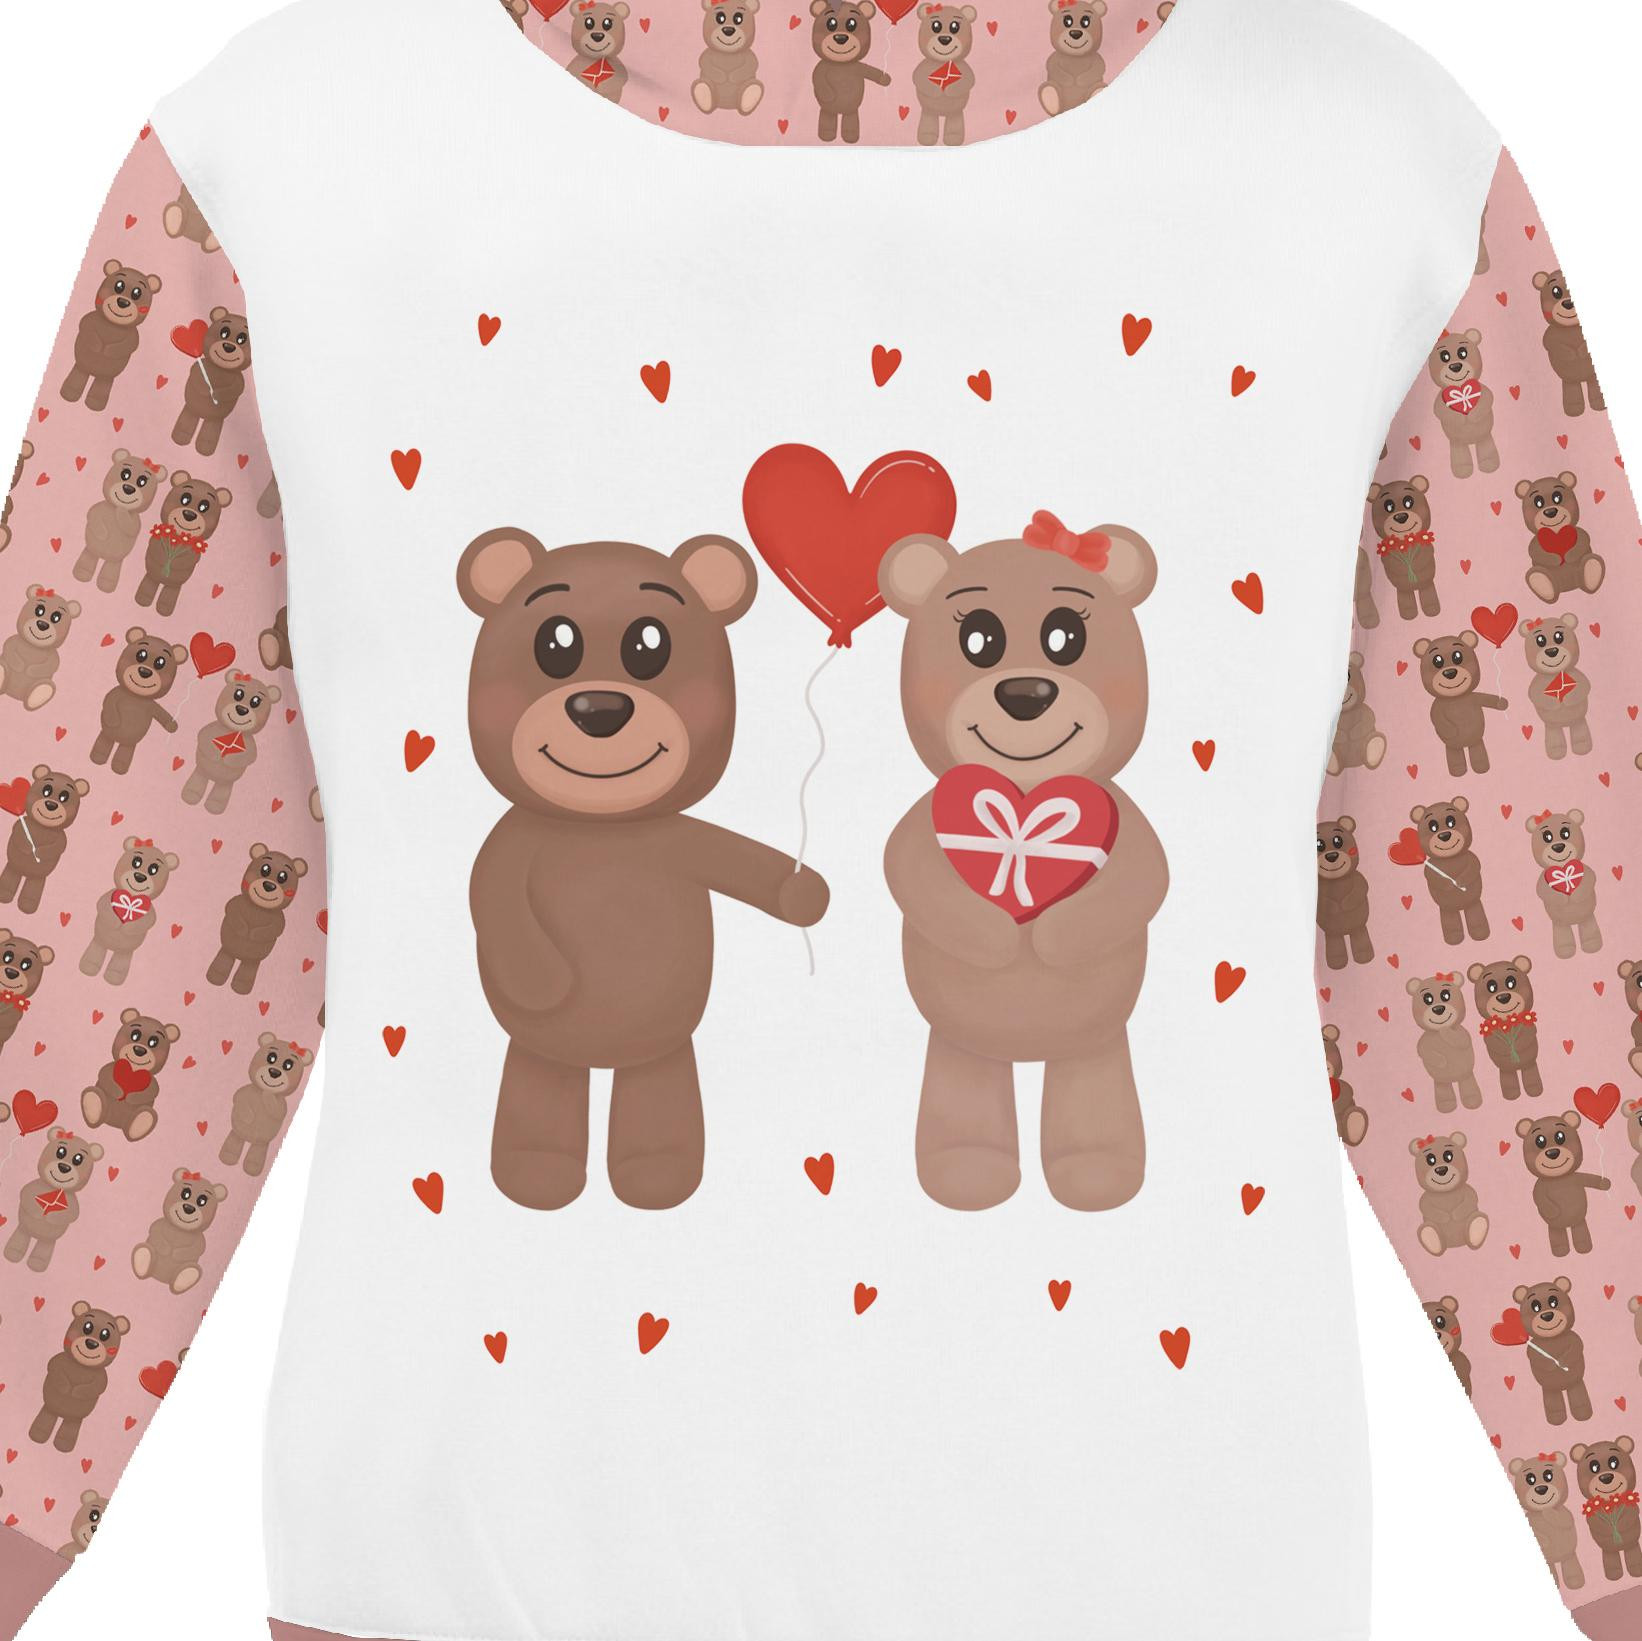 KID'S HOODIE (ALEX) - BEARS IN LOVE pat. 1 (BEARS IN LOVE) - sewing set